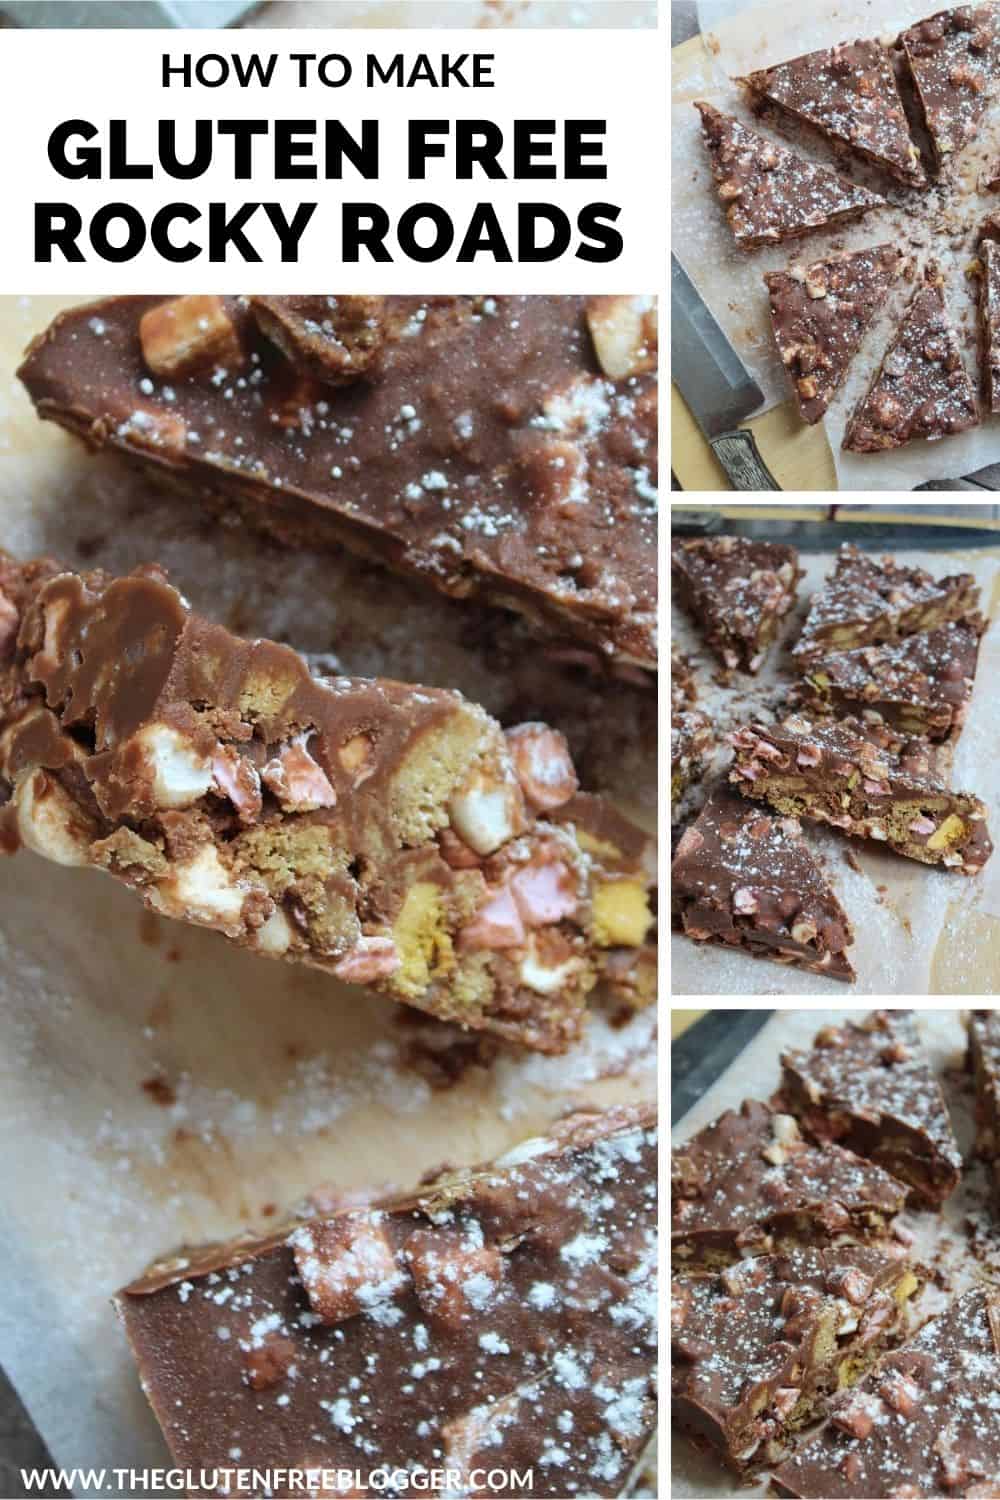 Gluten Free Rocky Roads Recipe